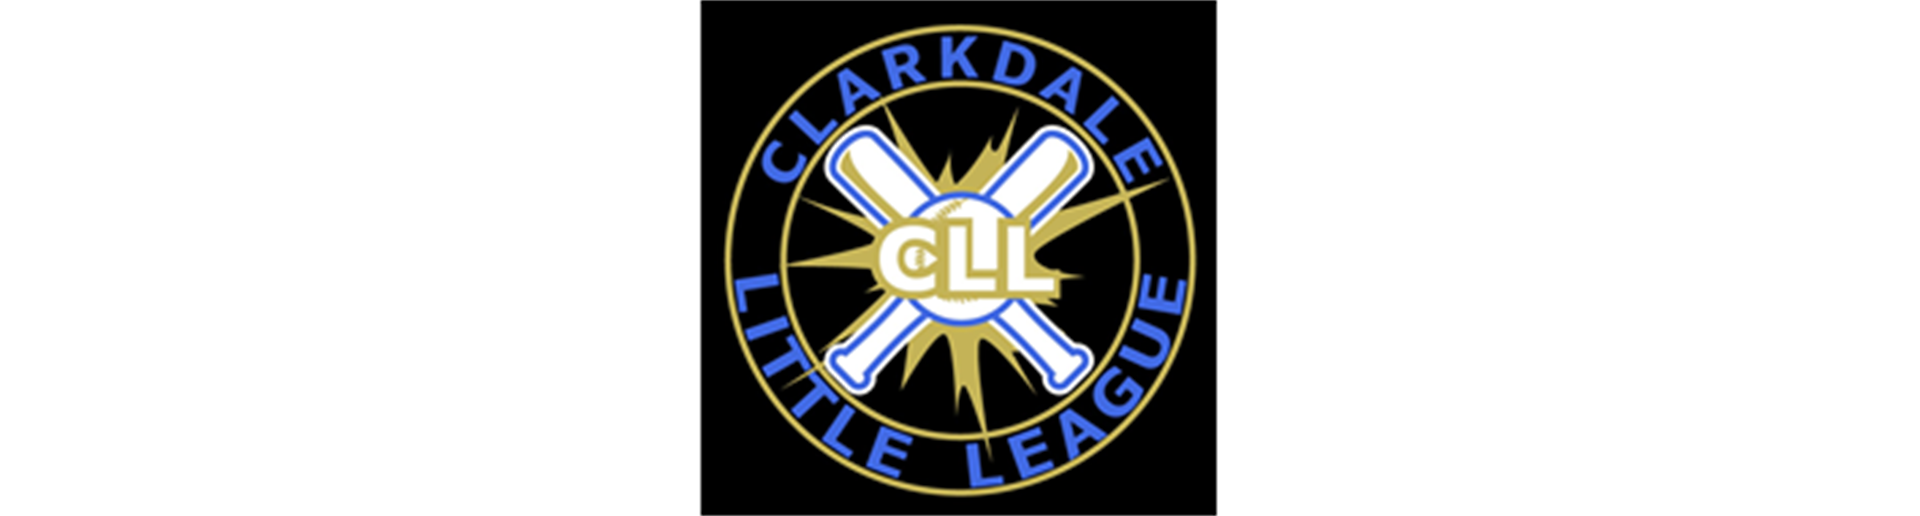 Clarkdale Little League